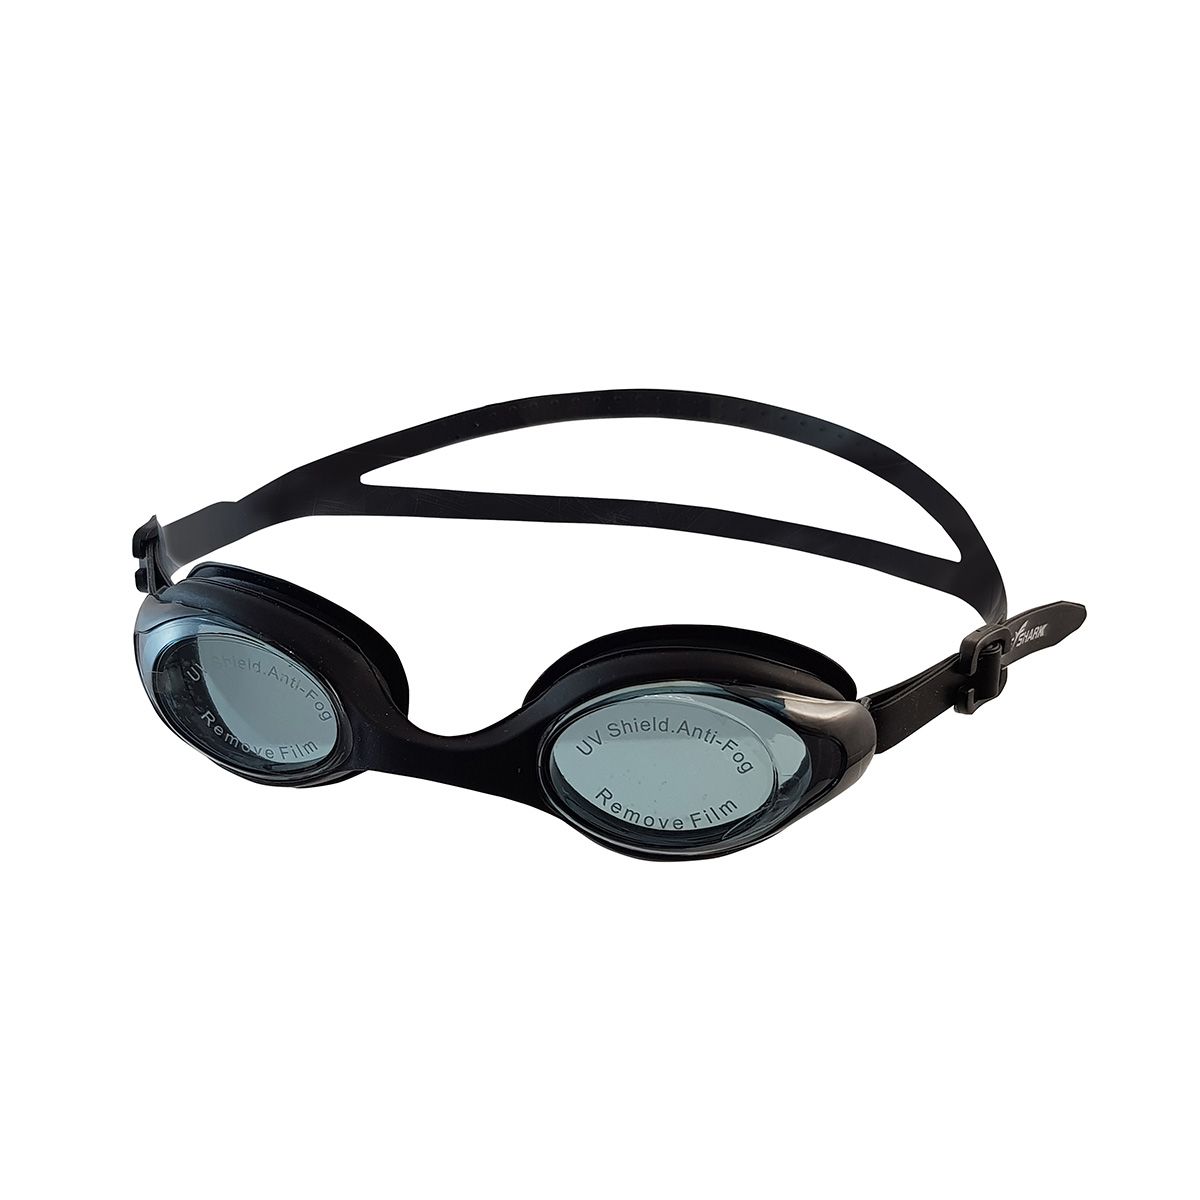 عینک شنا فری شارک مدل YG-2200 -  - 2